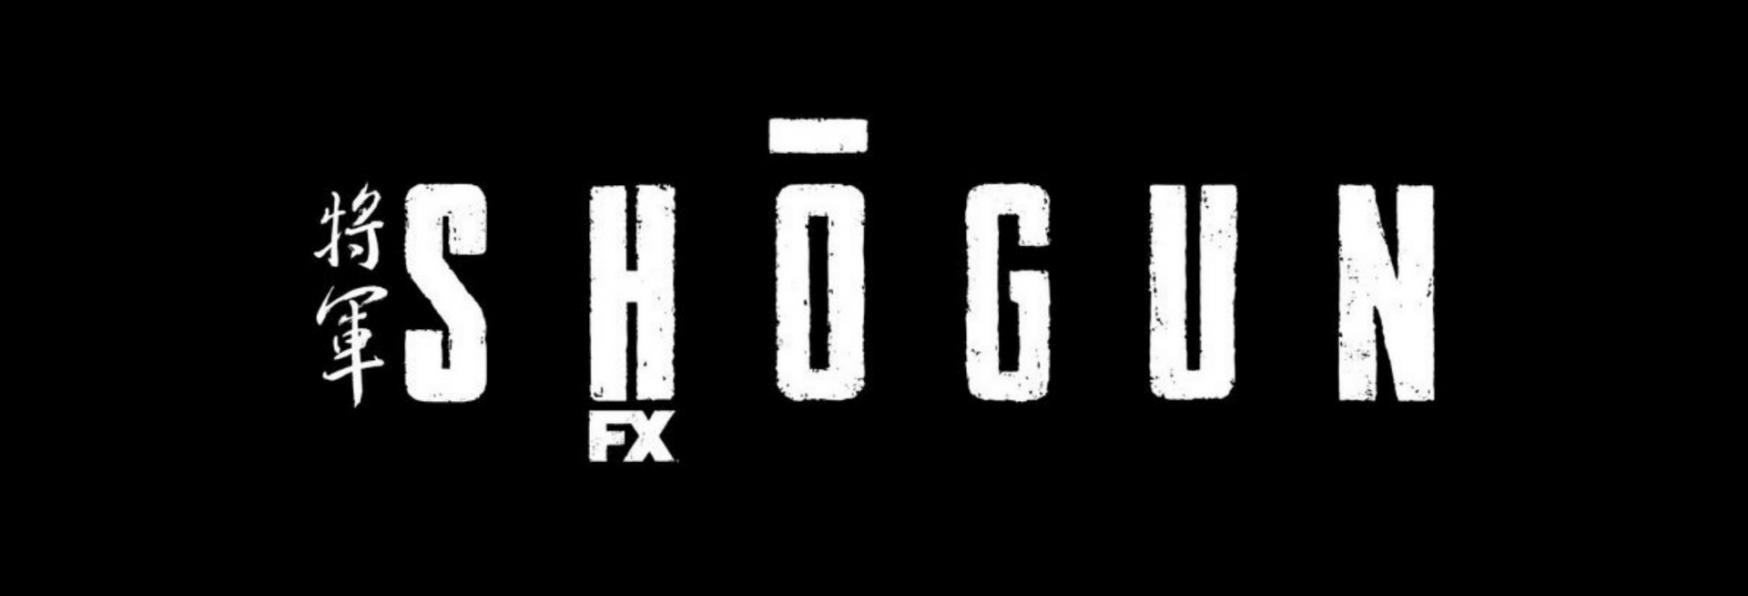 Shogun: annunciata la Data di Uscita della Serie TV targata FX